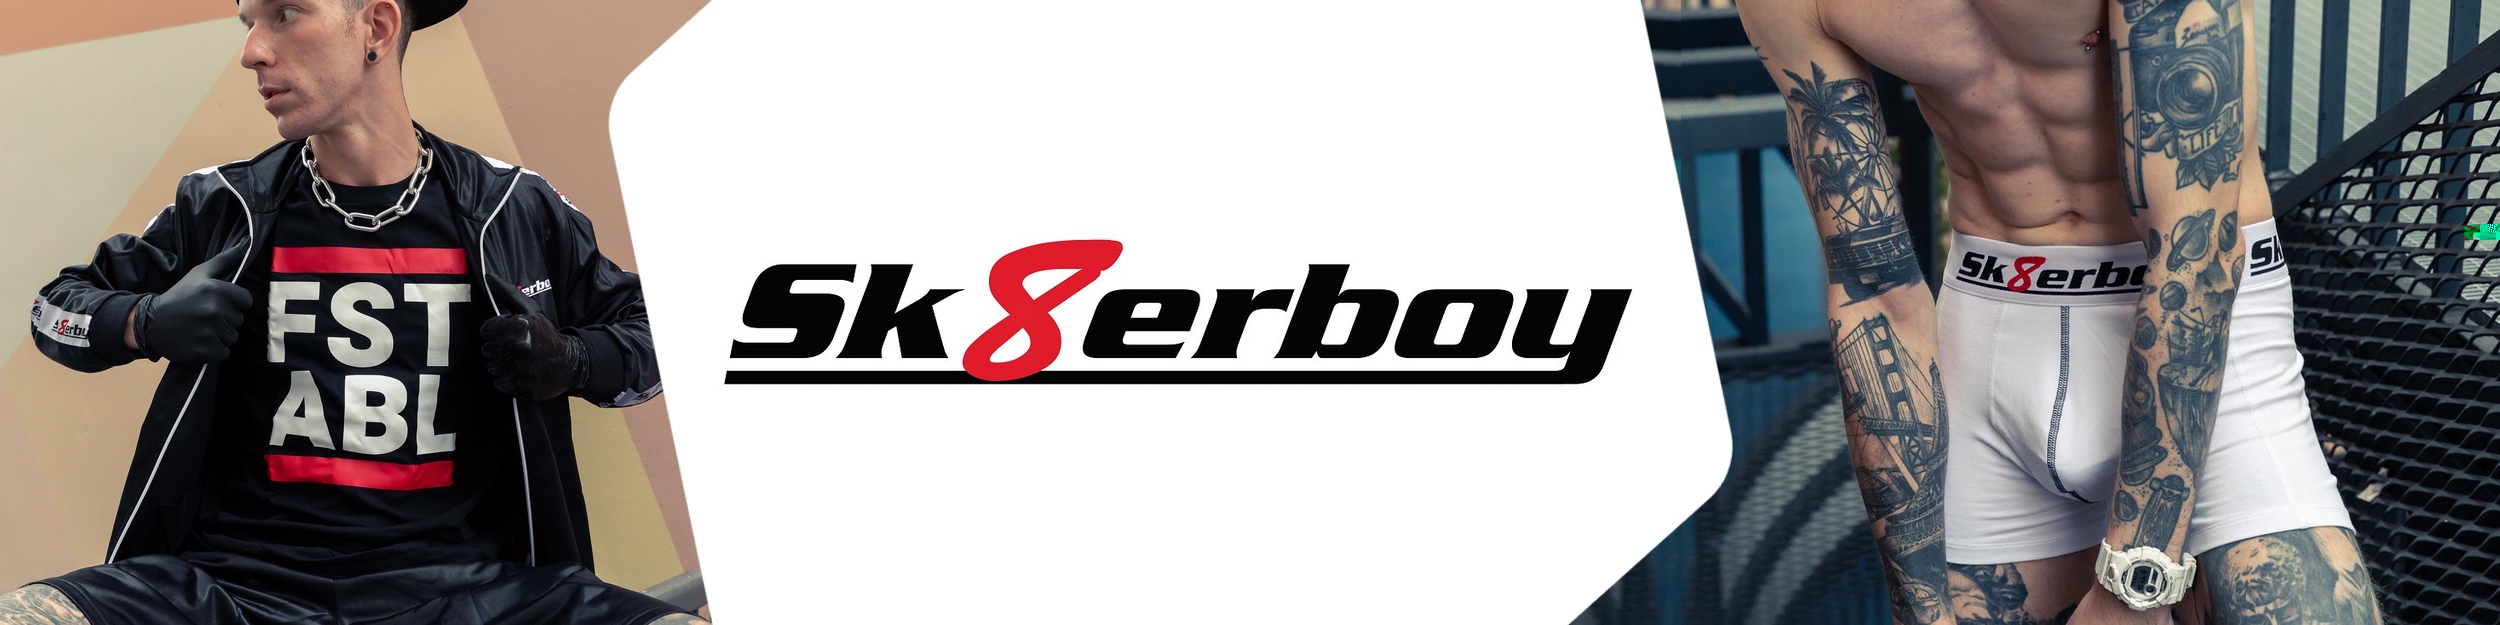 sk8erboy-logo-socken-header